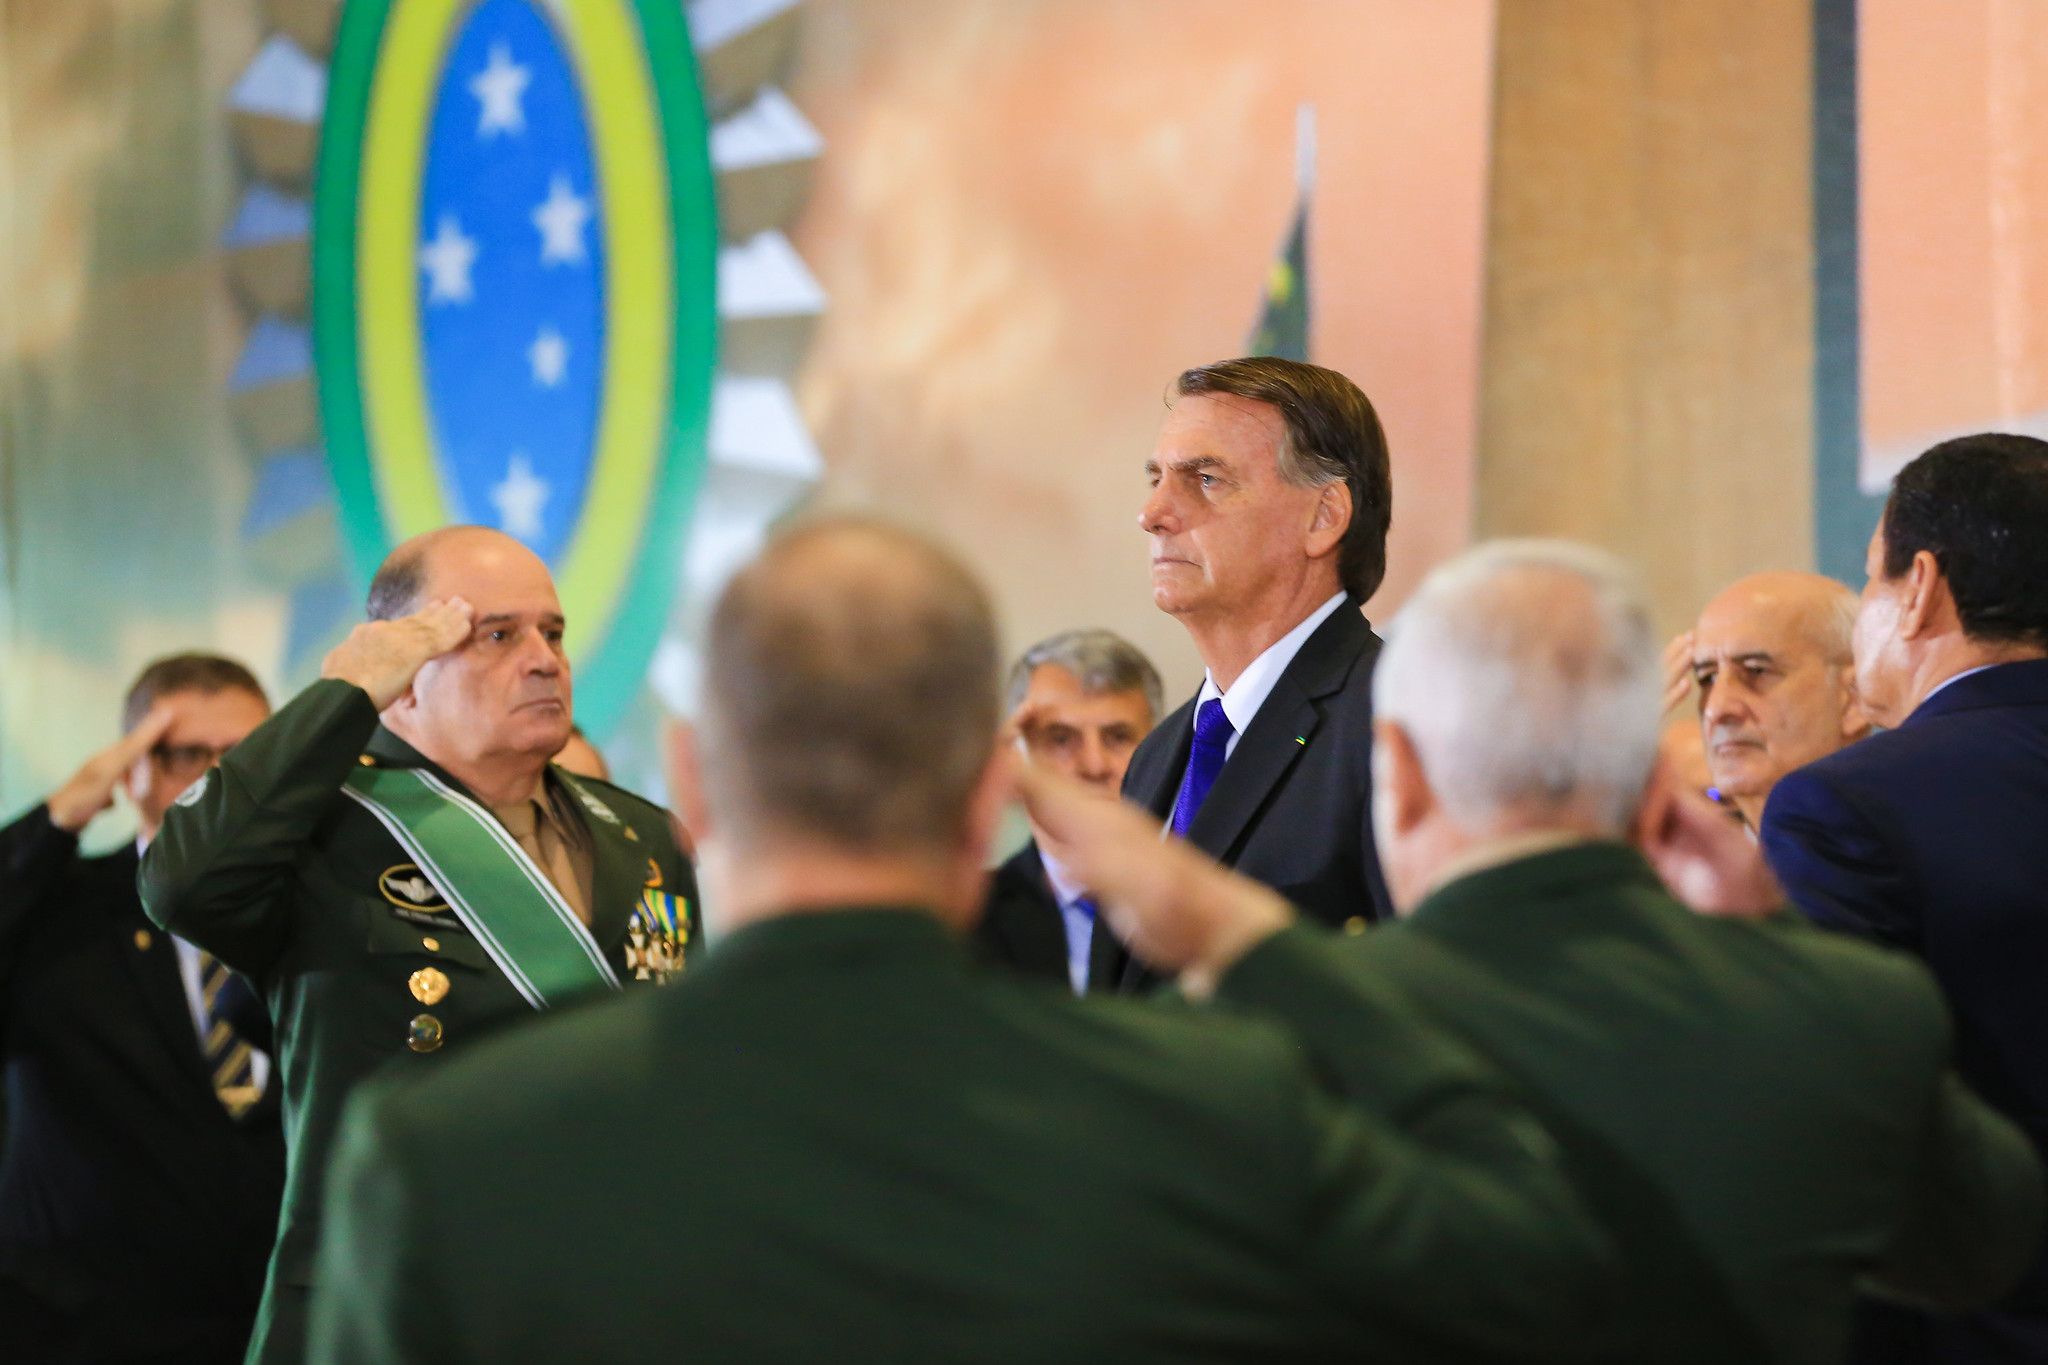 Bolsonaro partecipa a un evento militare: evita di parlare e piange